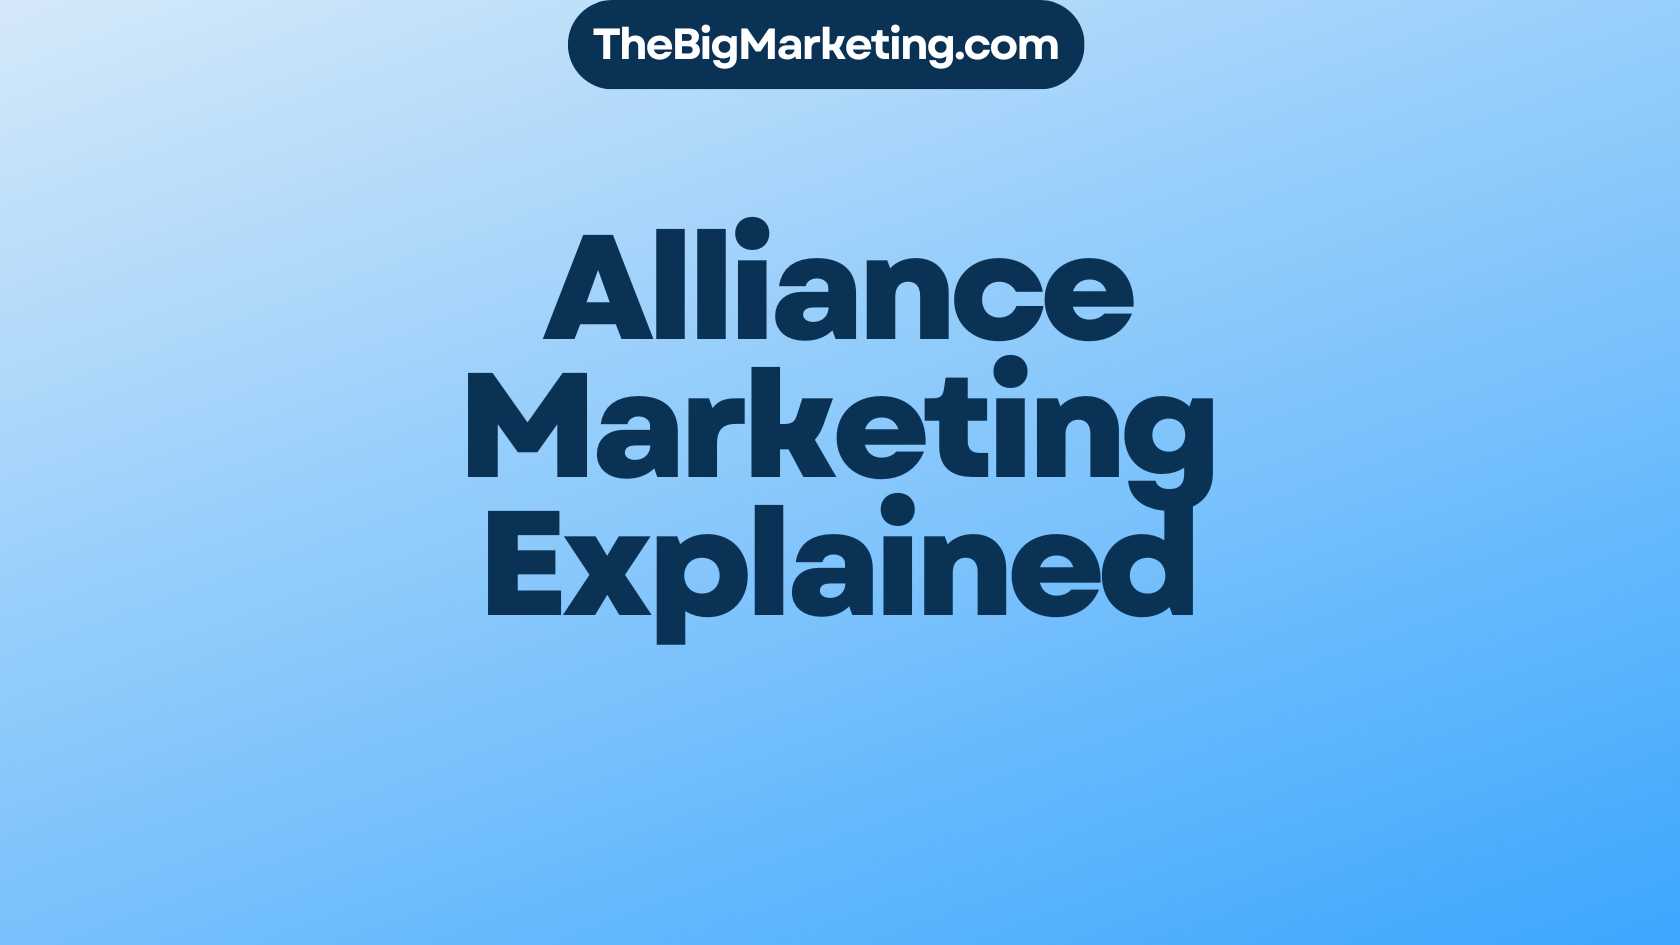 Alliance Marketing Explained